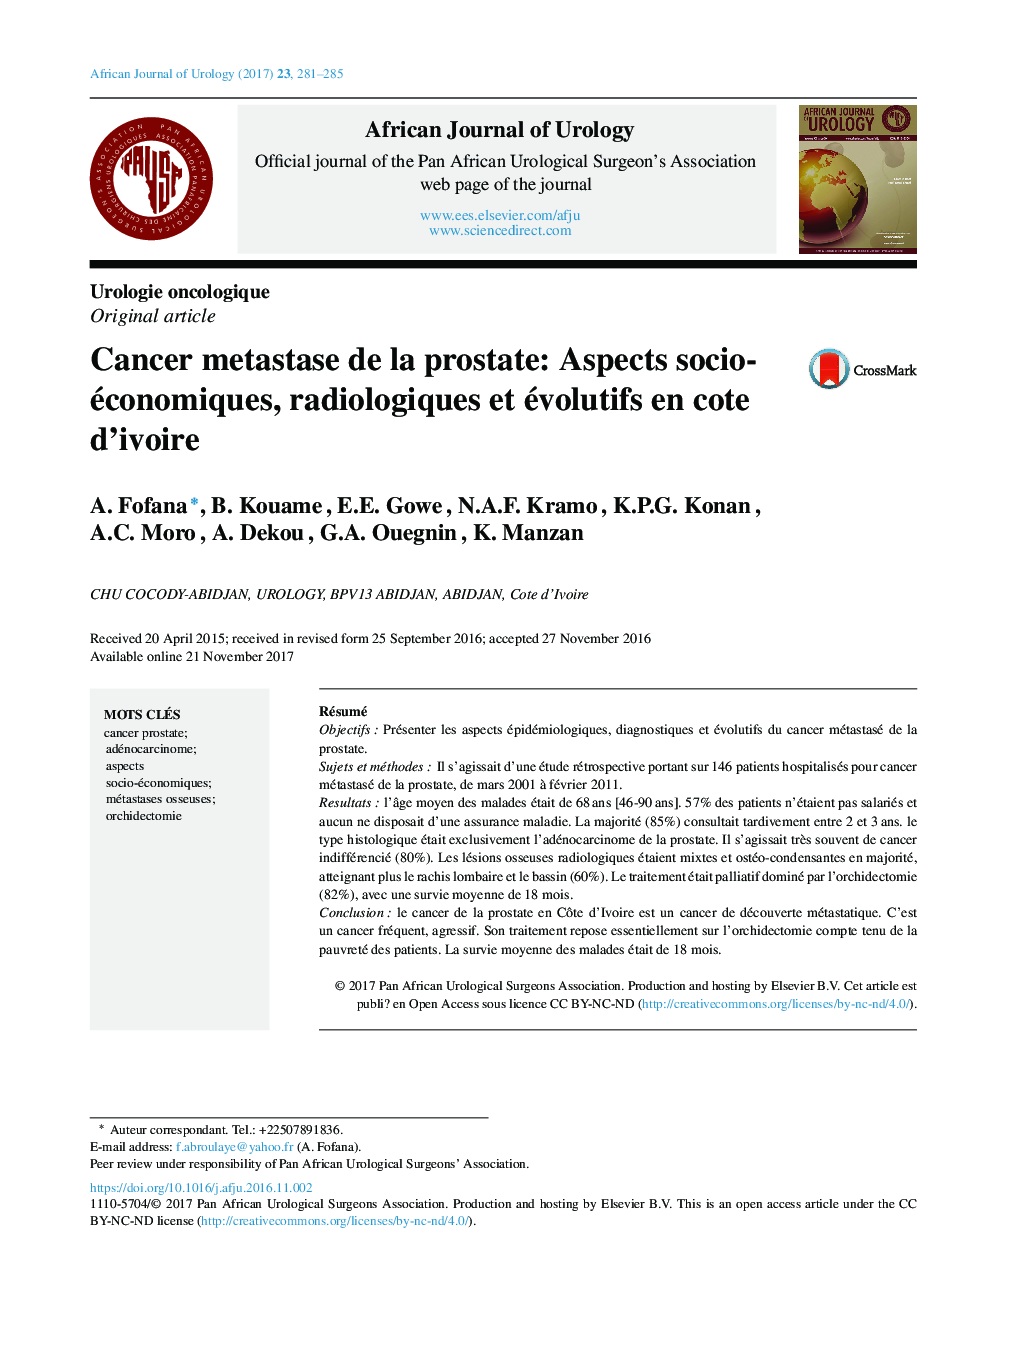 Cancer metastase de la prostate: Aspects socio-économiques, radiologiques et évolutifs en cote d'ivoire